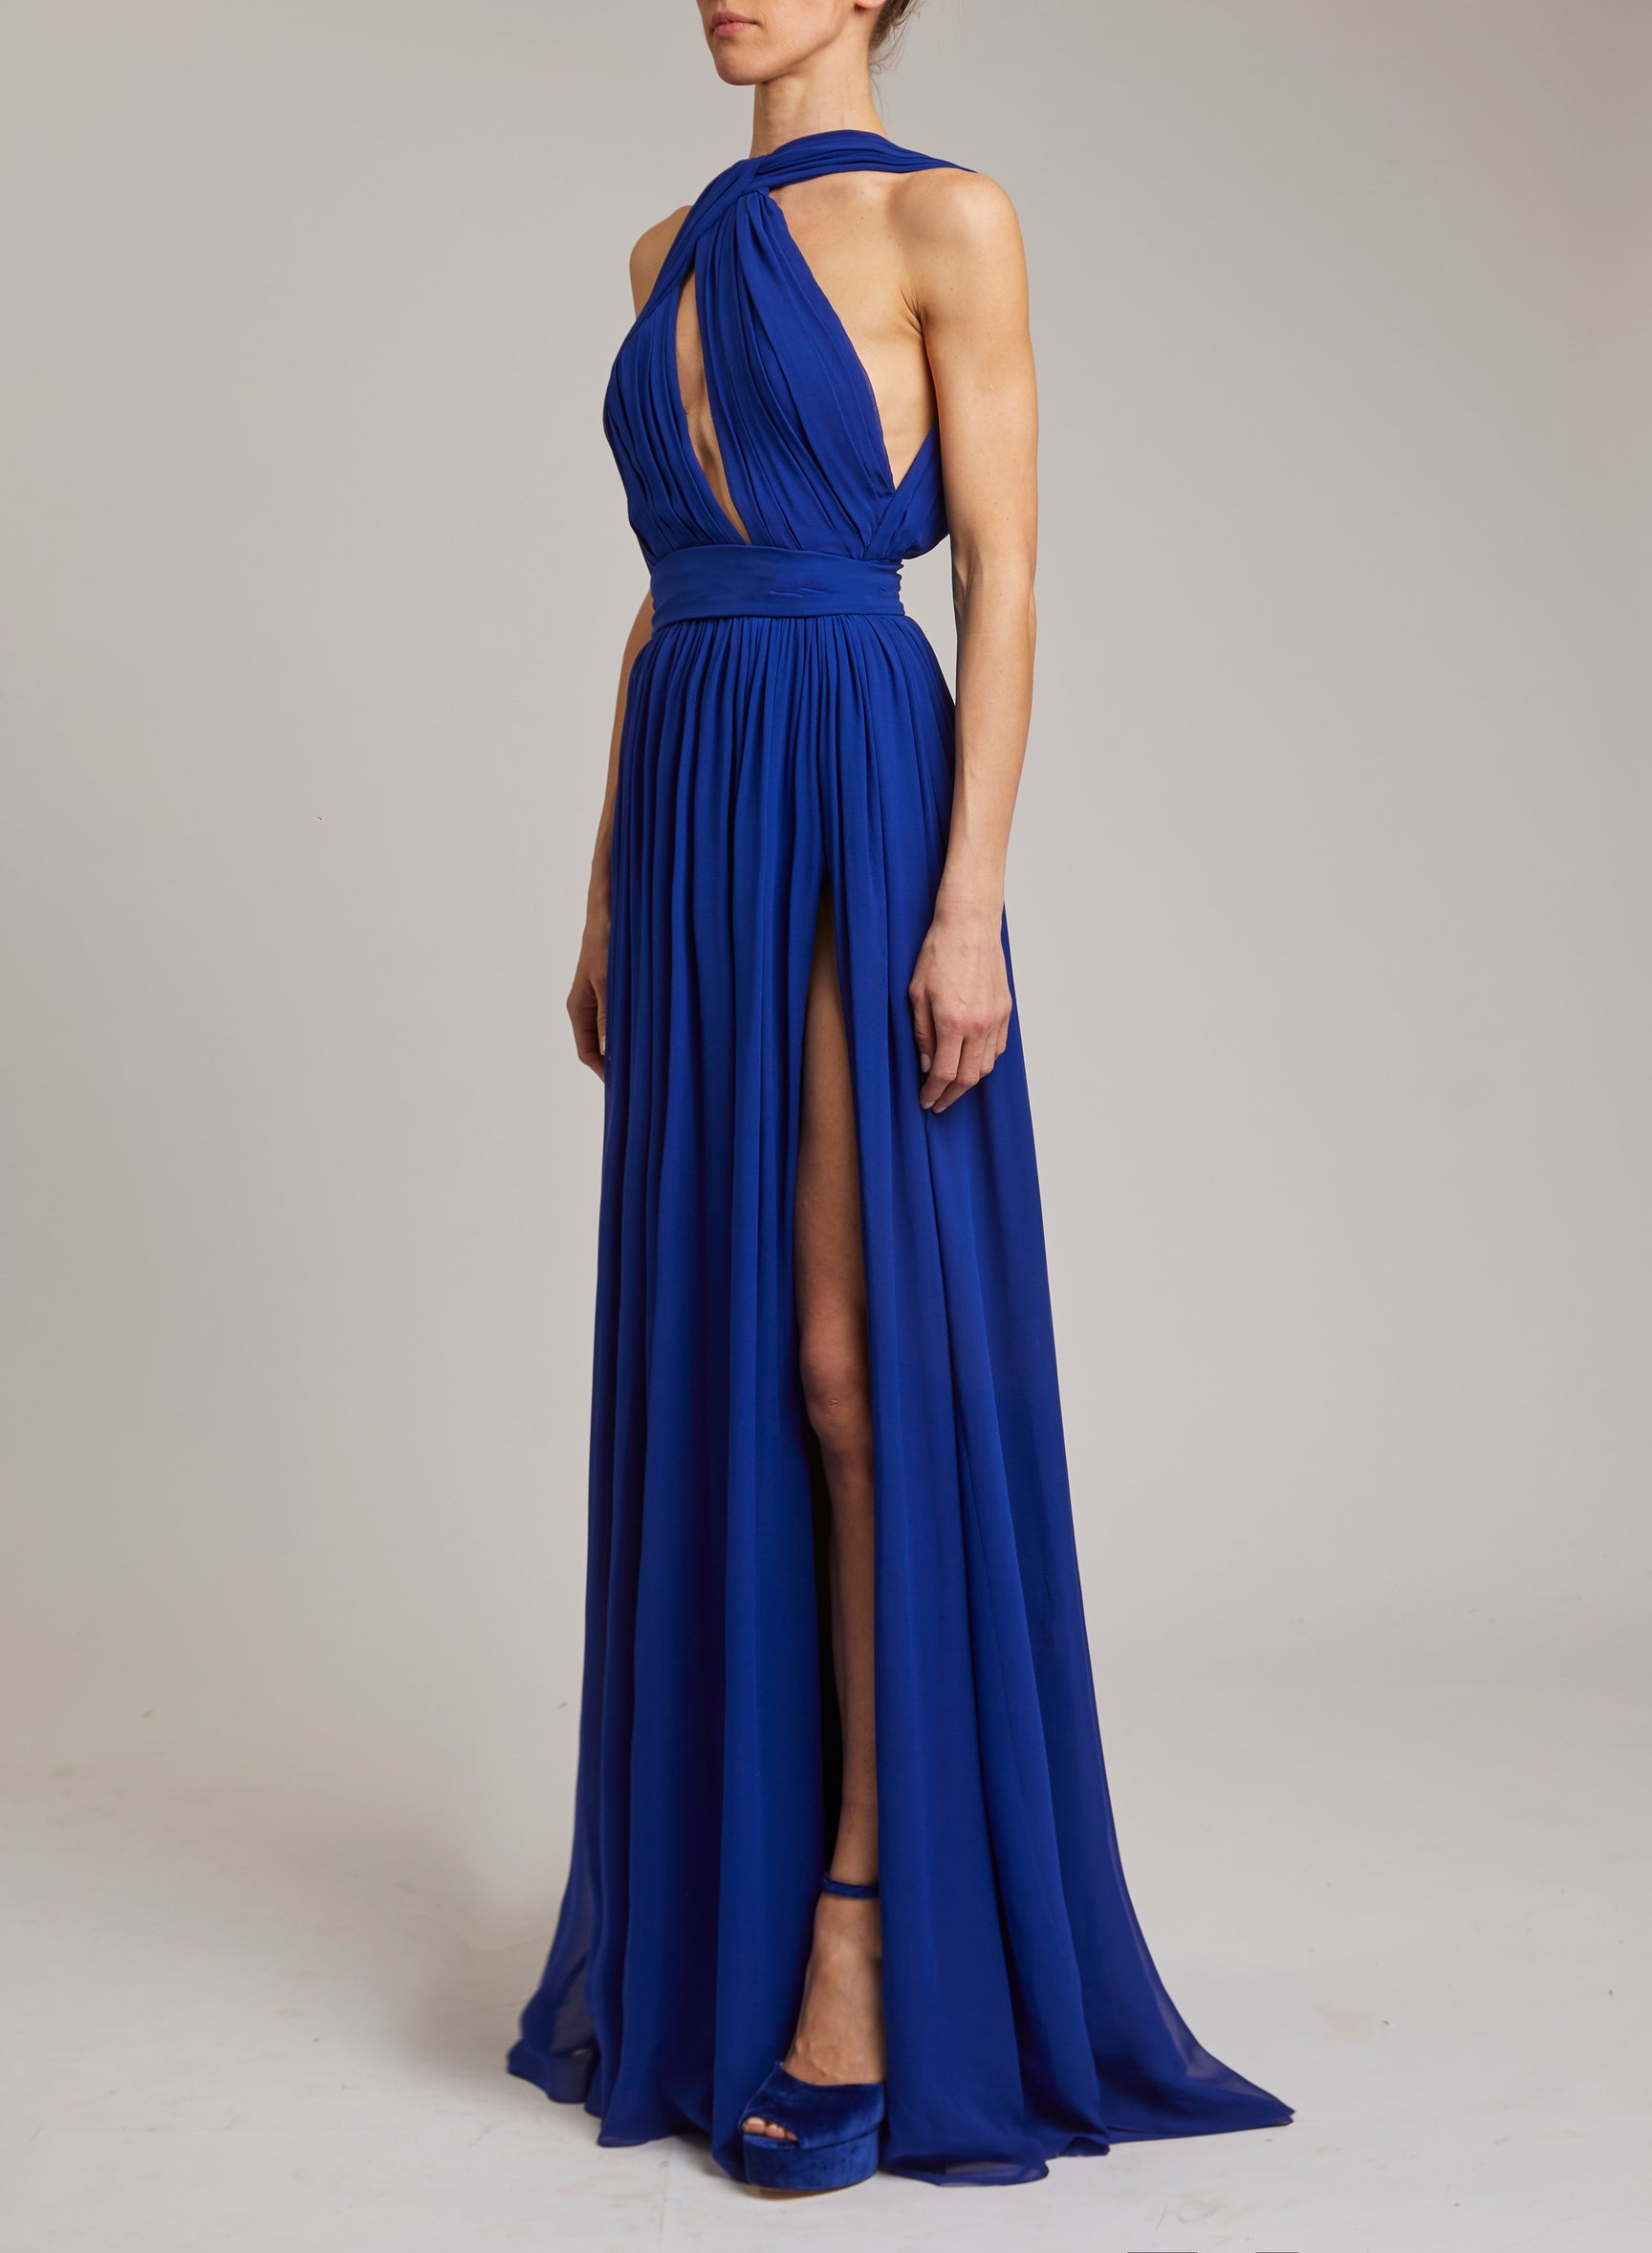 Designer Ready-to-Wear Dresses for Women - ELIE SAAB – Elie Saab US